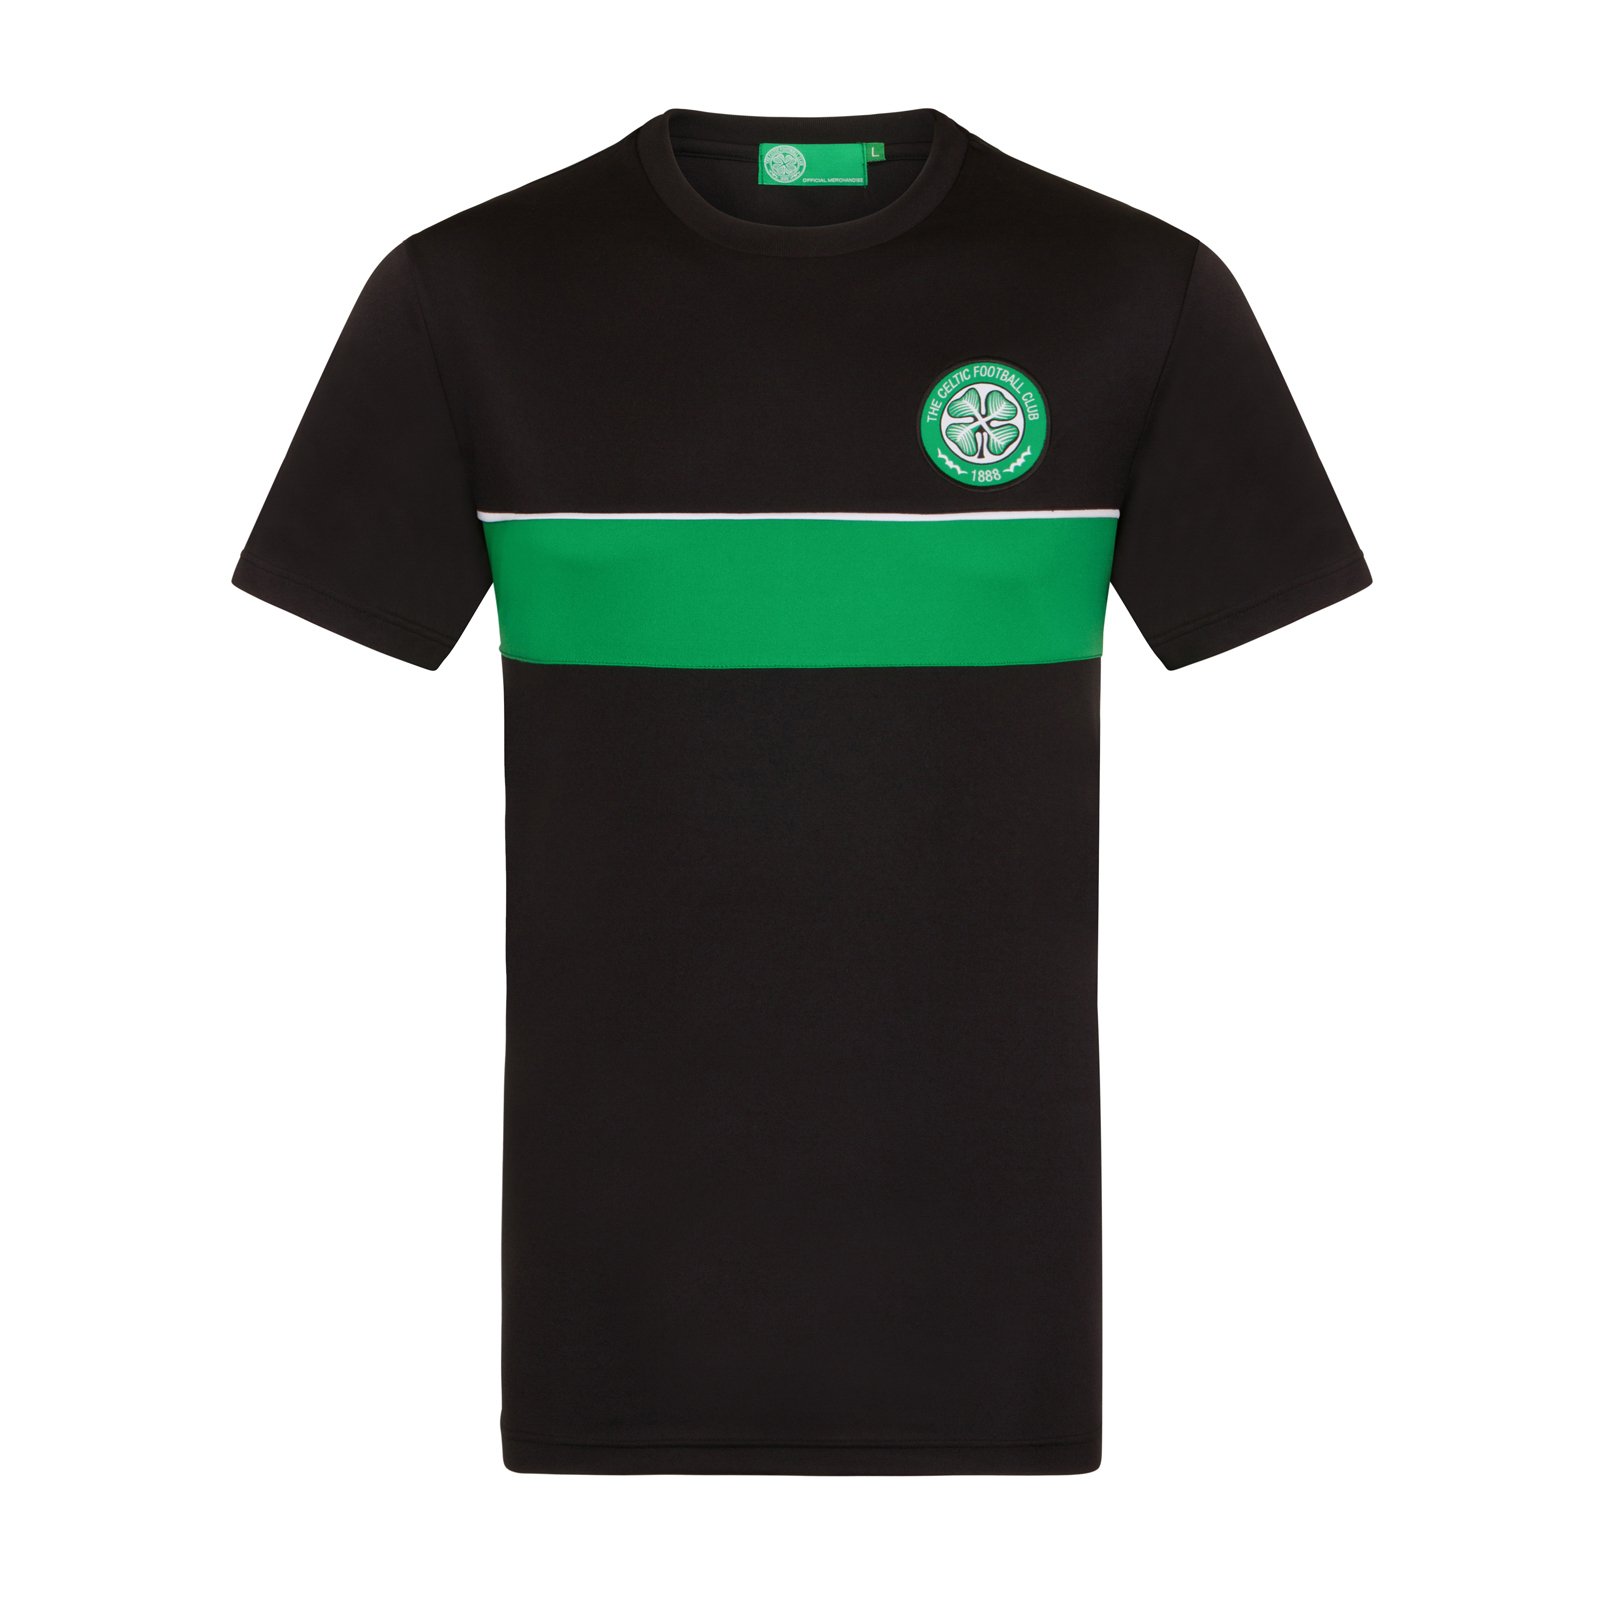 Celtic FC - Herren Trainingstrikot aus Polyester - Offizielles Merchandise - Geschenk für Fußballfans - Schwarz/Grün gestreift - XXL